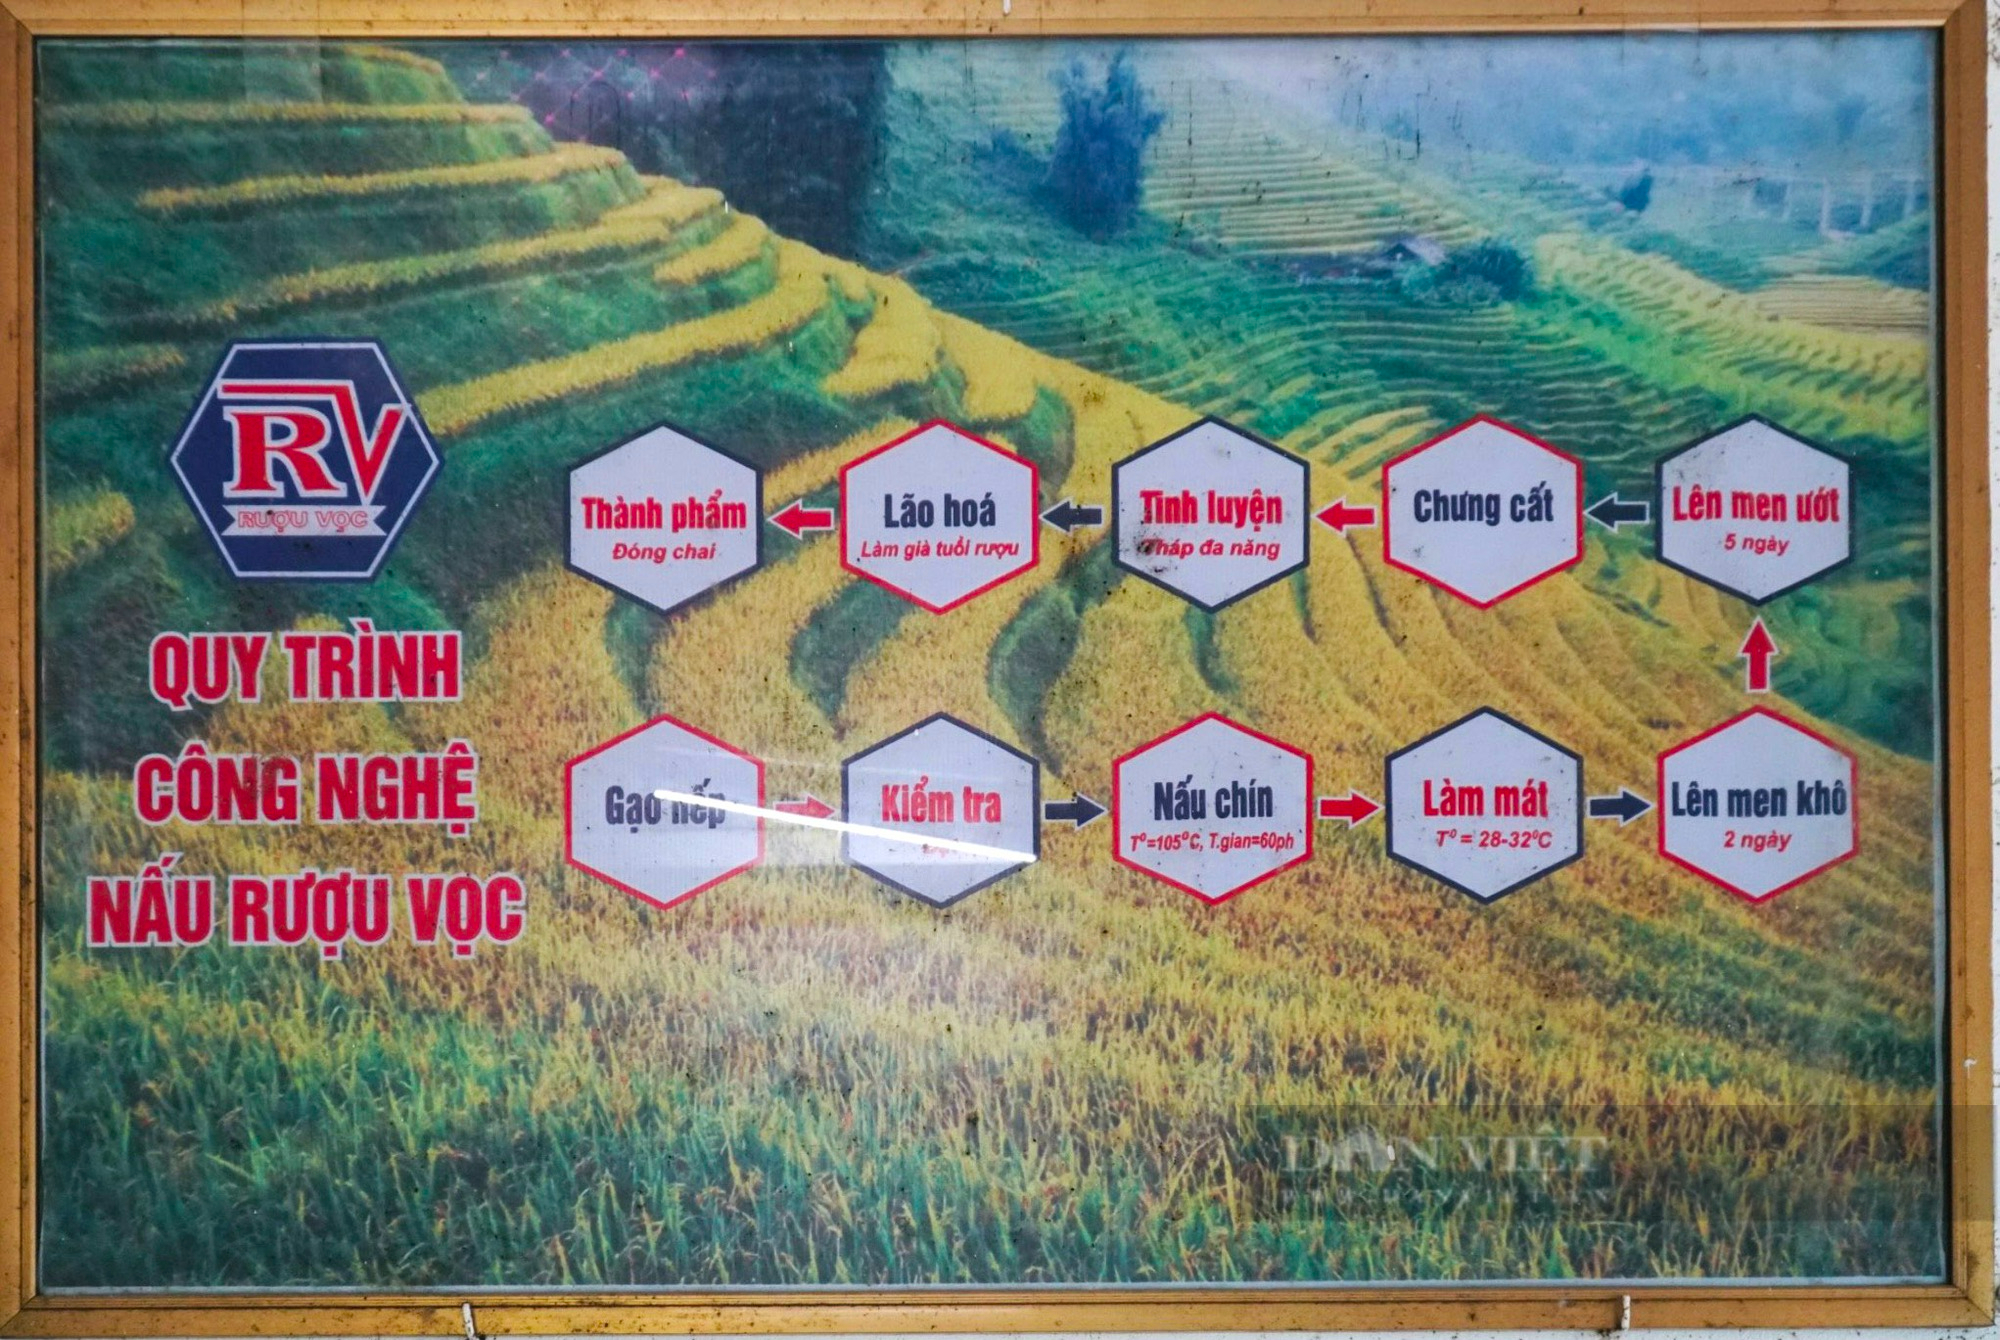 Rượu Vọc - sản phẩm OCOP tại Hà Nam đi lên từ làng nghề - Ảnh 5.